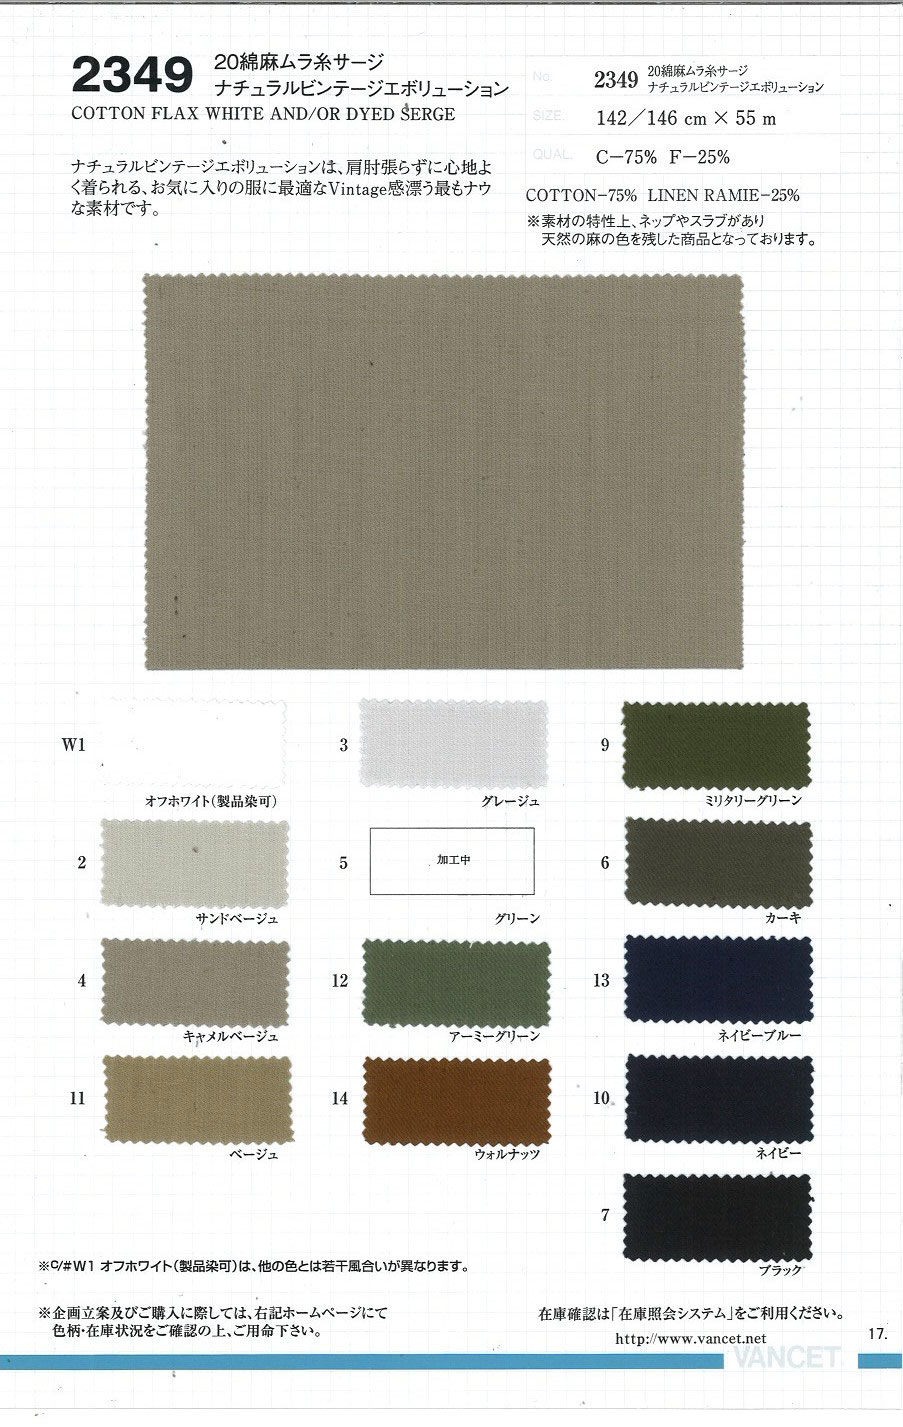 2349 20 Linen Uneven Thread Serge Natural Vintage Evolution[Textile / Fabric] VANCET